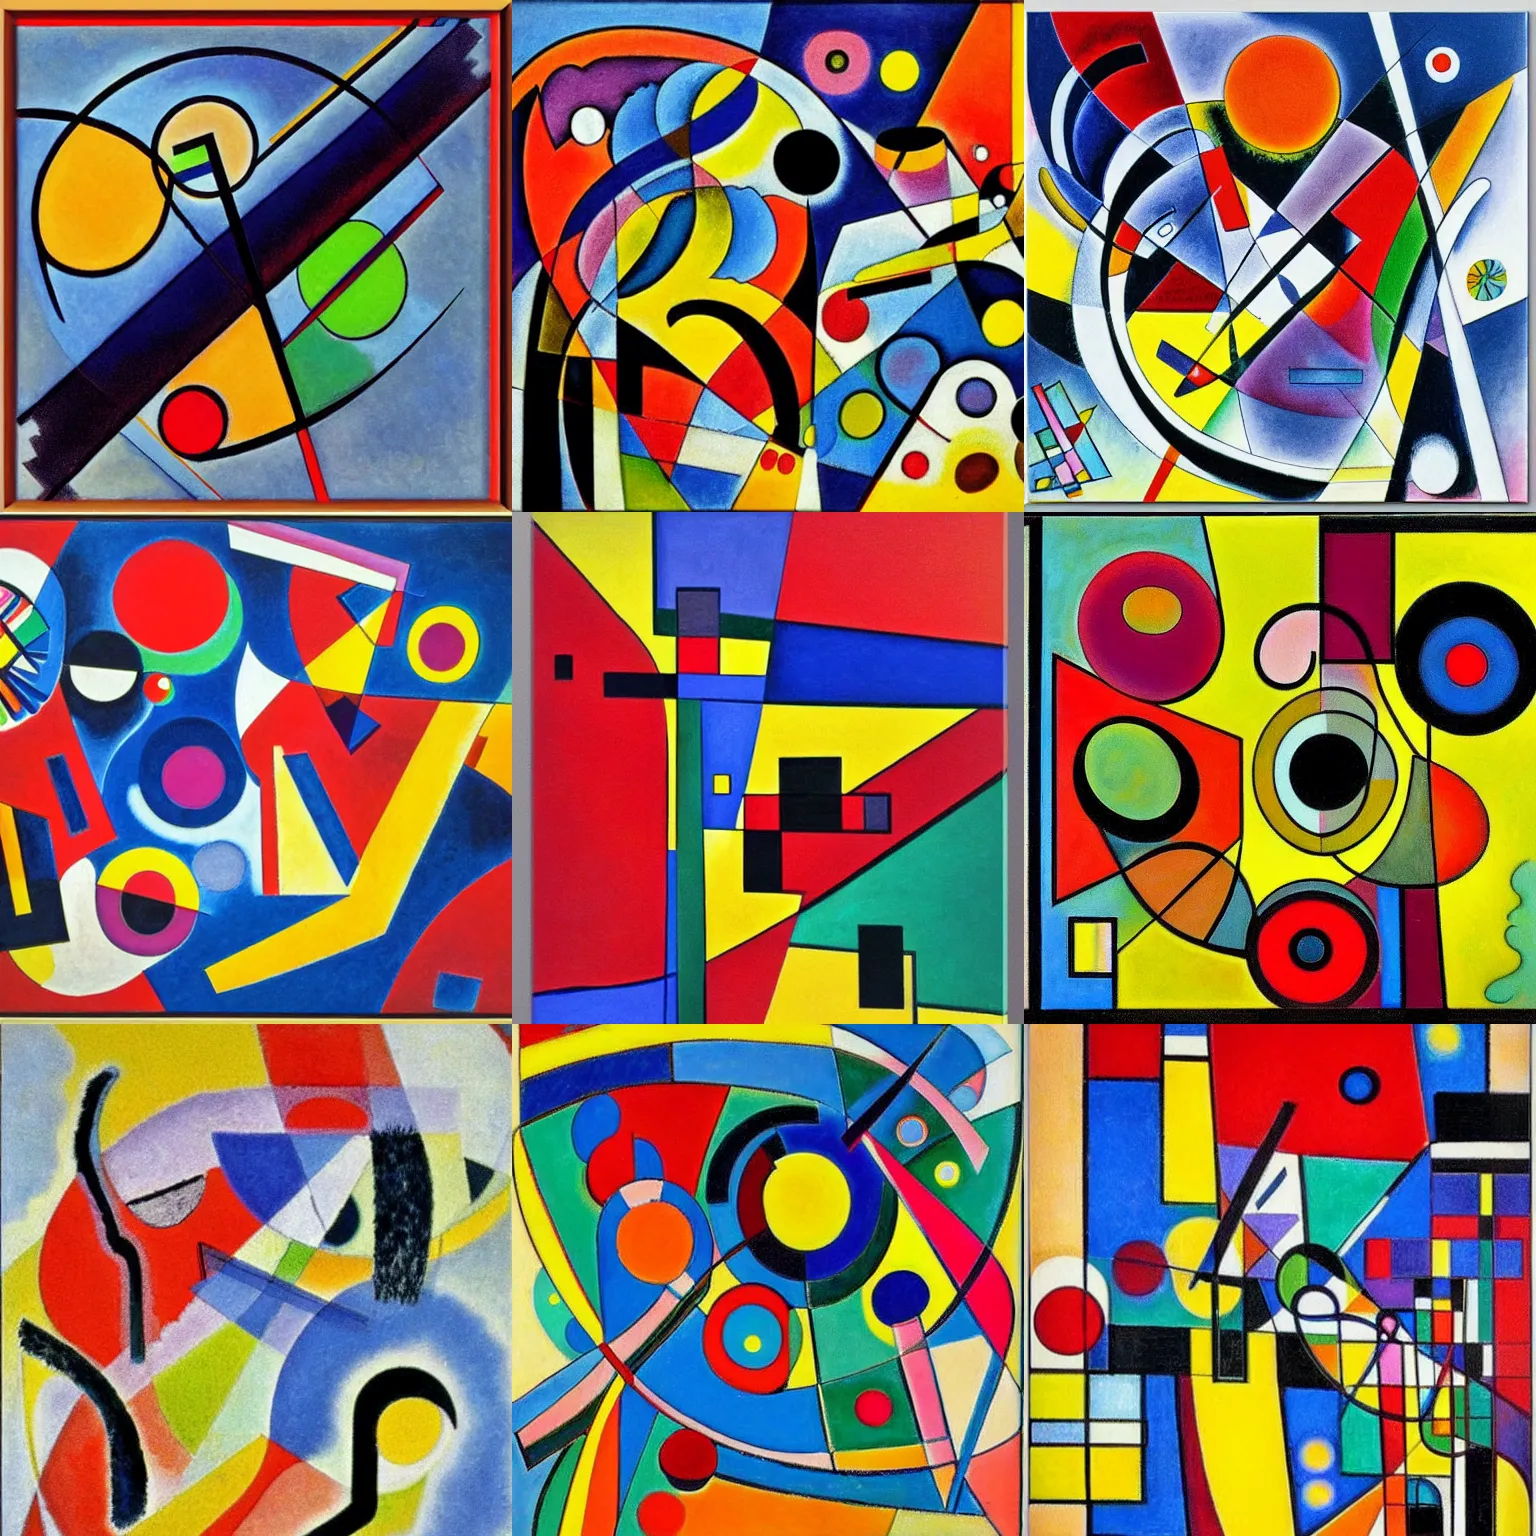 Prompt: an abstract artwork, Vaserely, Kandinsky, Mondrian, Pollock